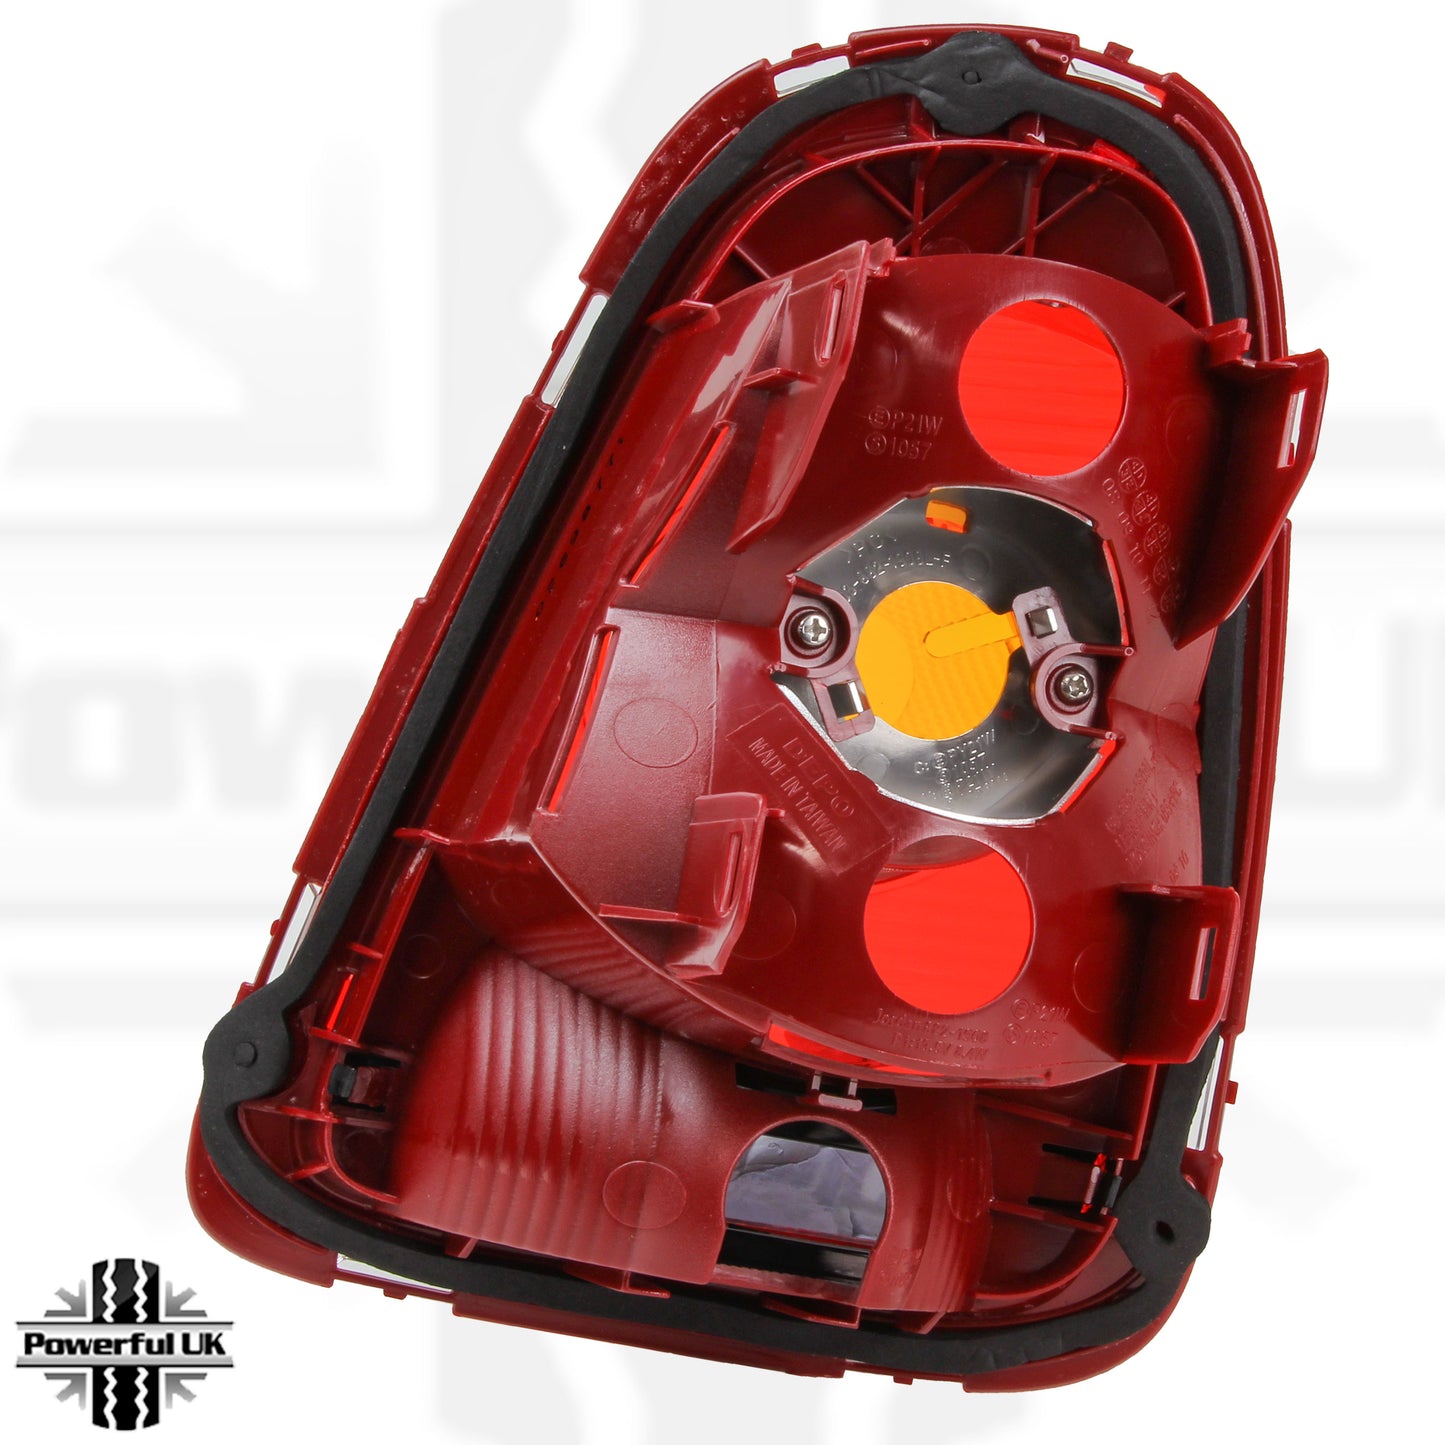 Rear Light - Orange Indicator - NO Bulb Holder/Bulbs - LEFT - for BMW Mini (R56/R57)